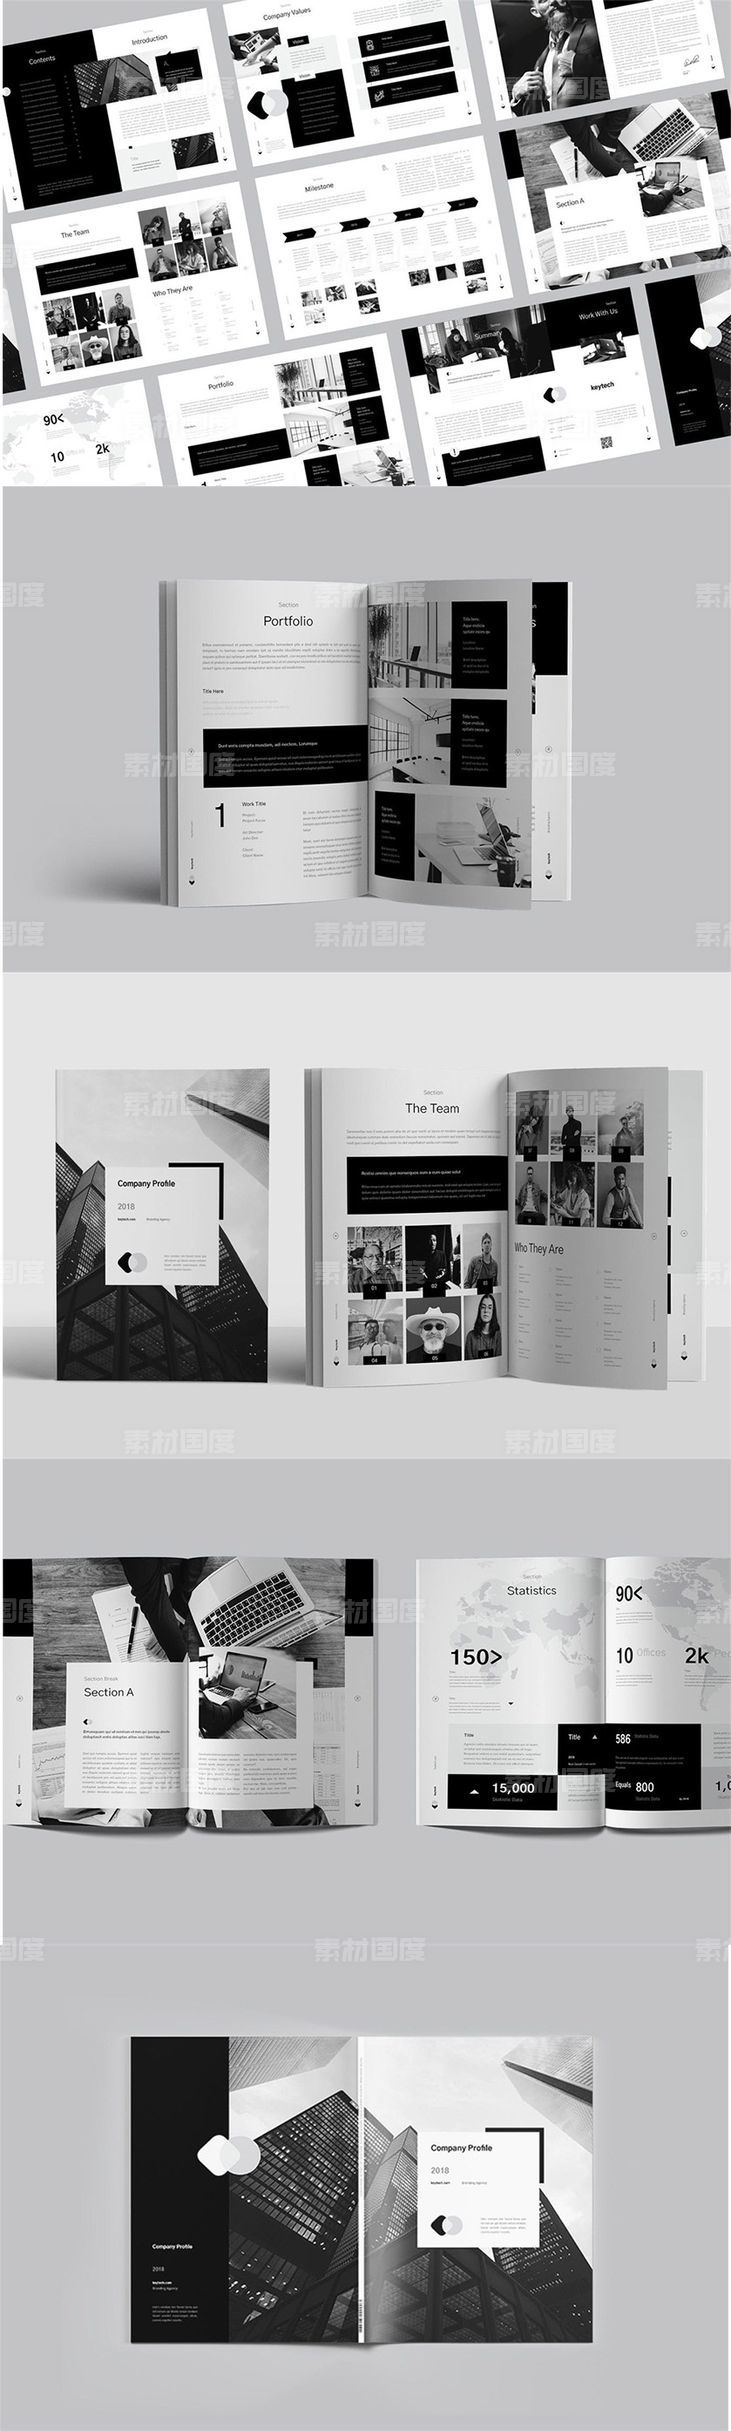 黑白配色的高端时尚的企业简介画册楼书品牌手册杂志设计模板